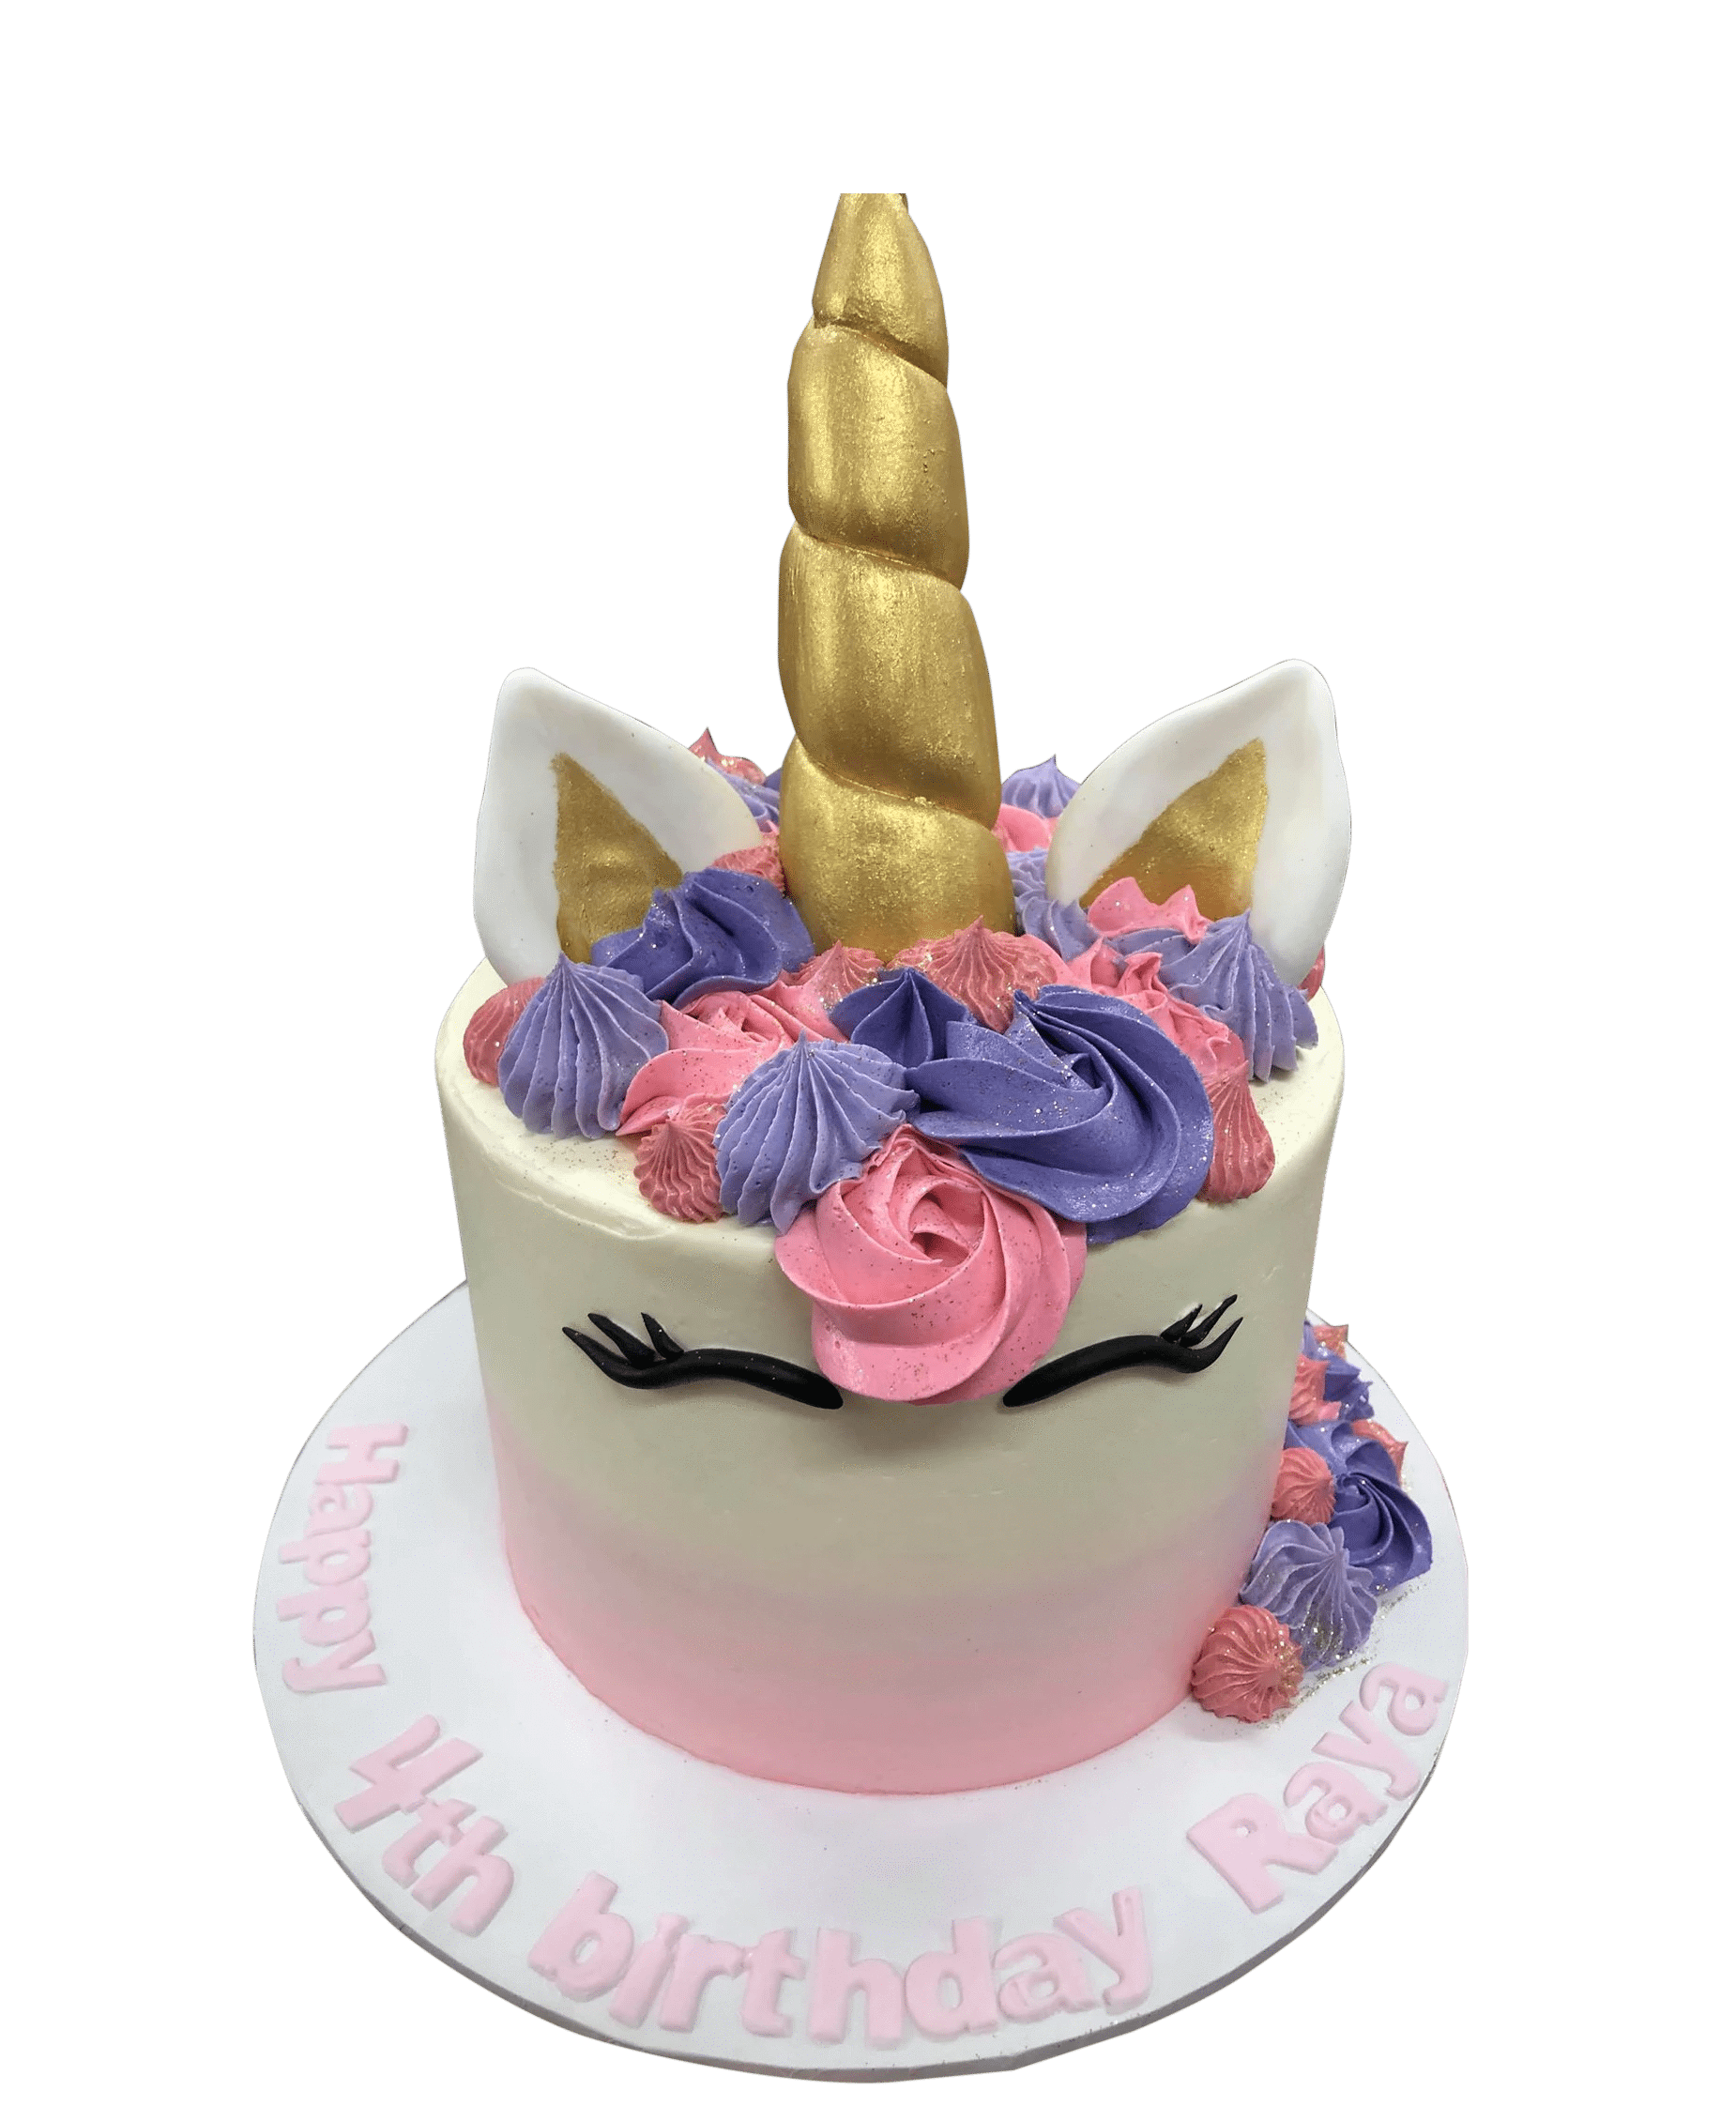 Personalised Purple Sprinkle Cake – Baked by Steph